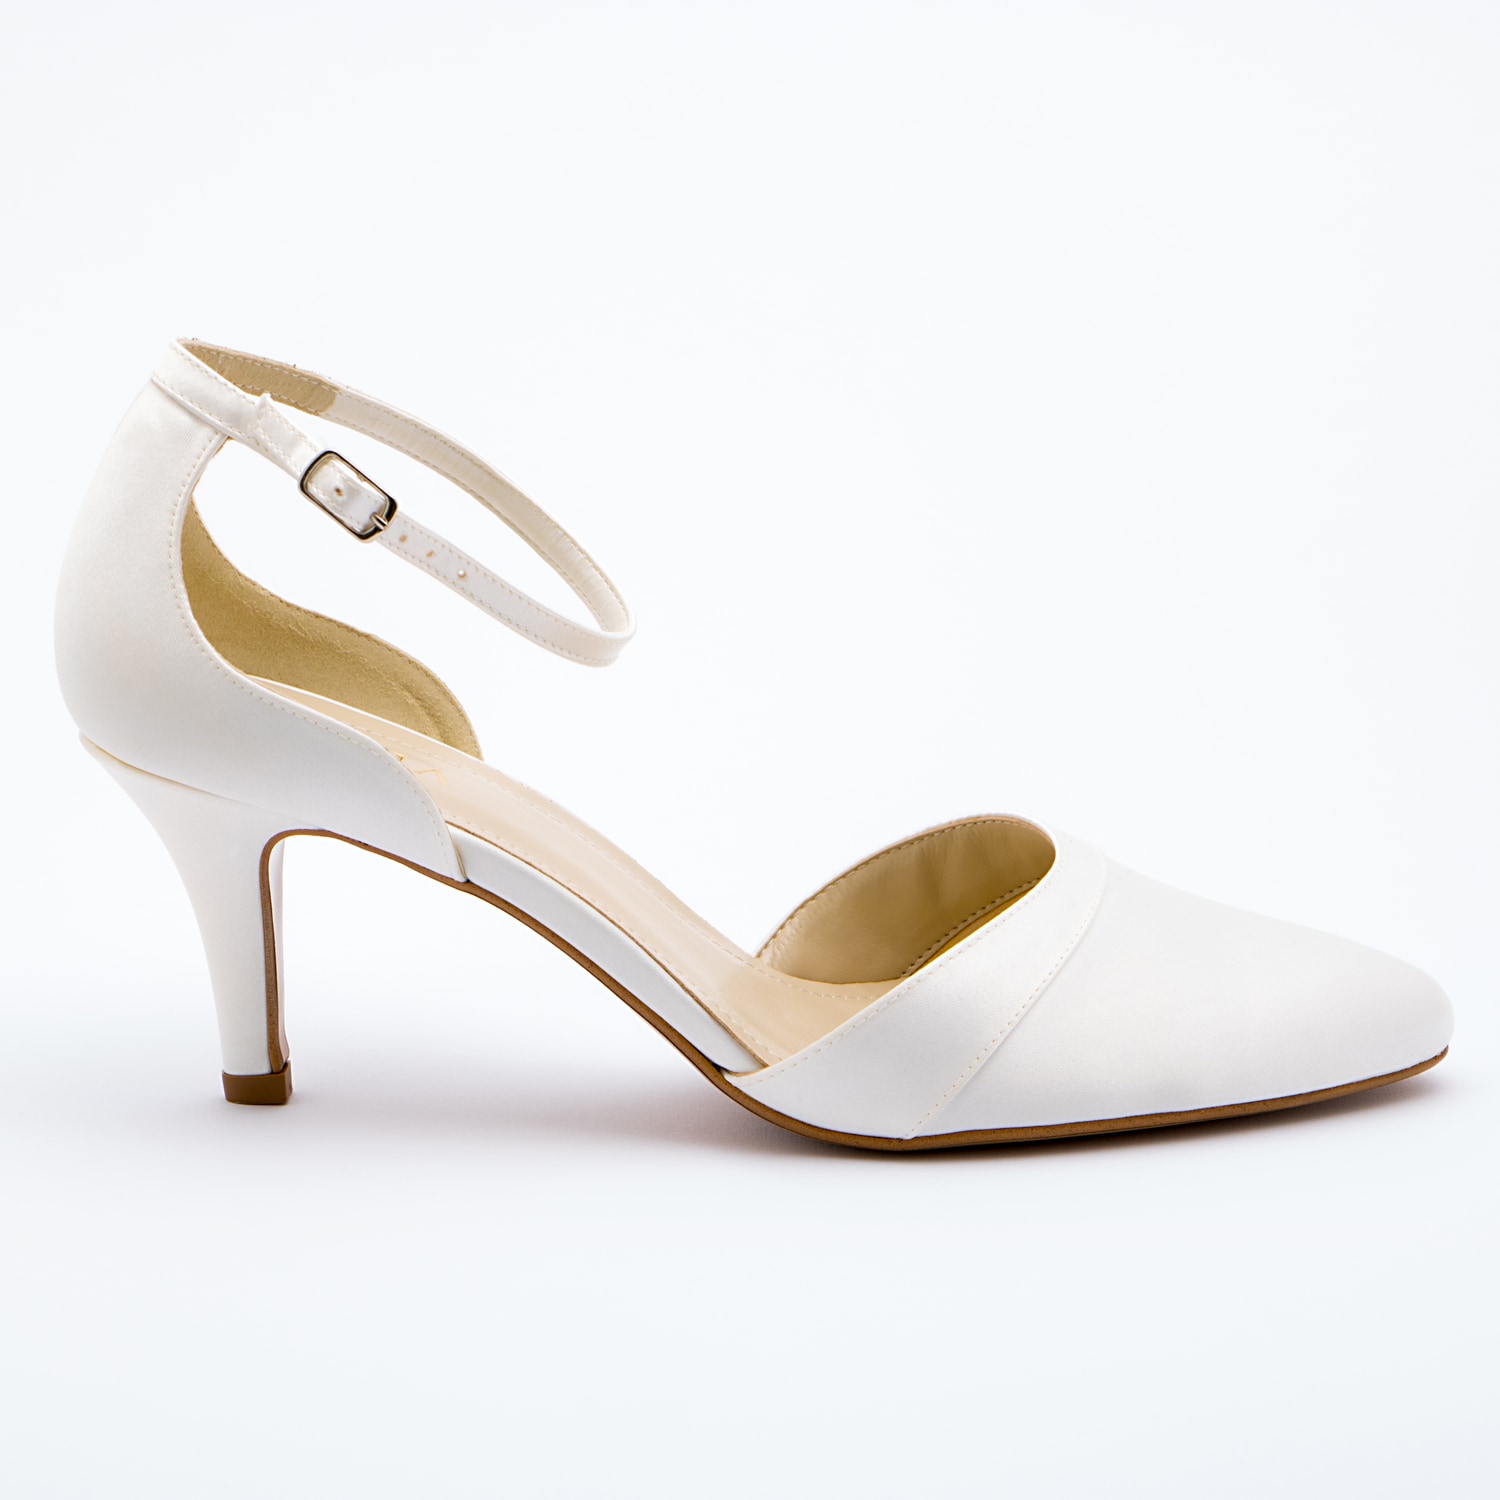 Scarpe Sposa 9 Cm.Patrizia Cavalleri Wedding Shoes Bride Shoes 7 Cm Heel